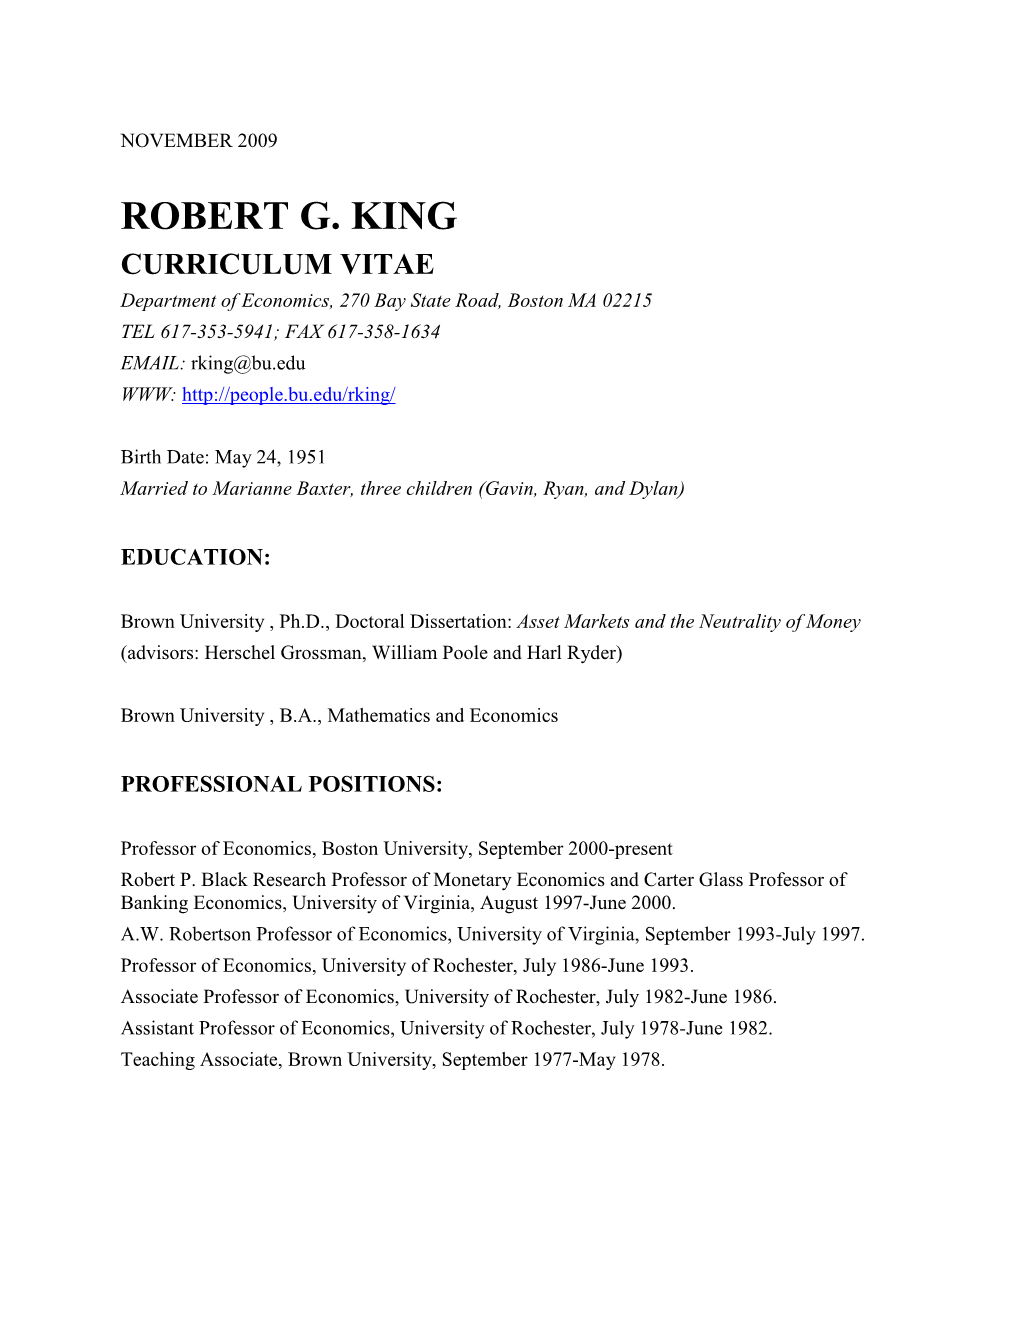 Robert G. King